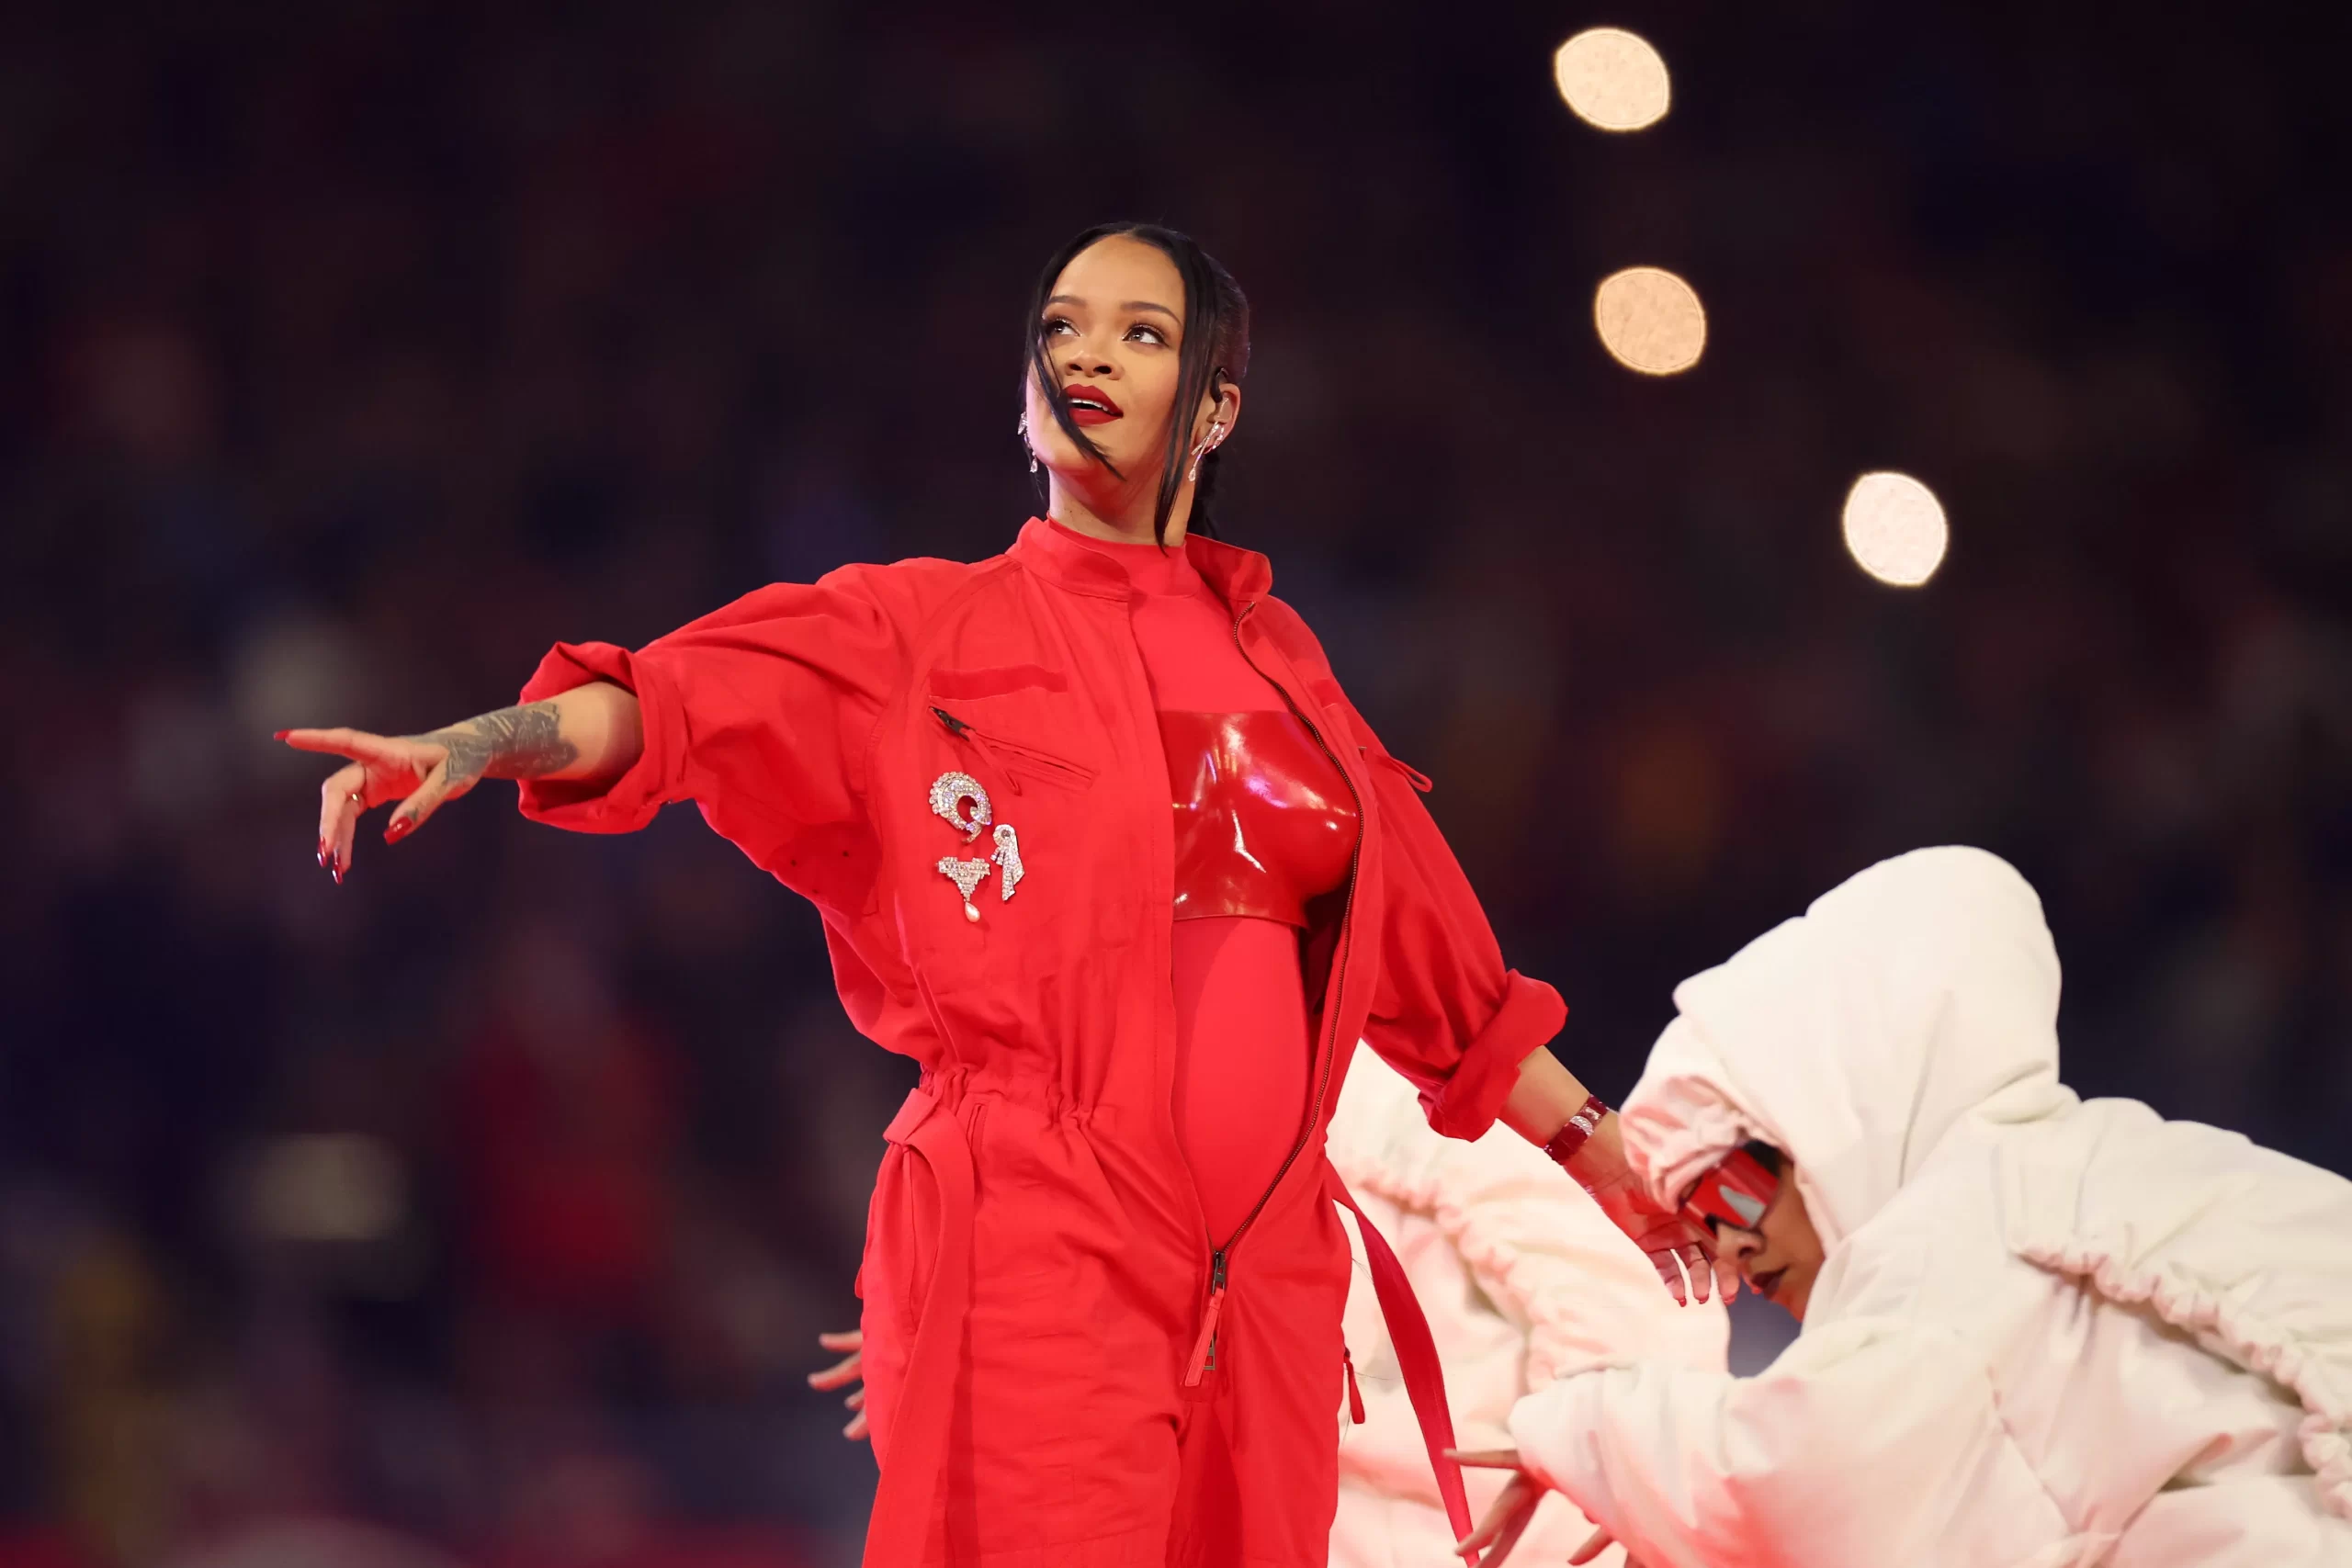 Rihanna opinberar óléttu sína í Super Bowl veislunni